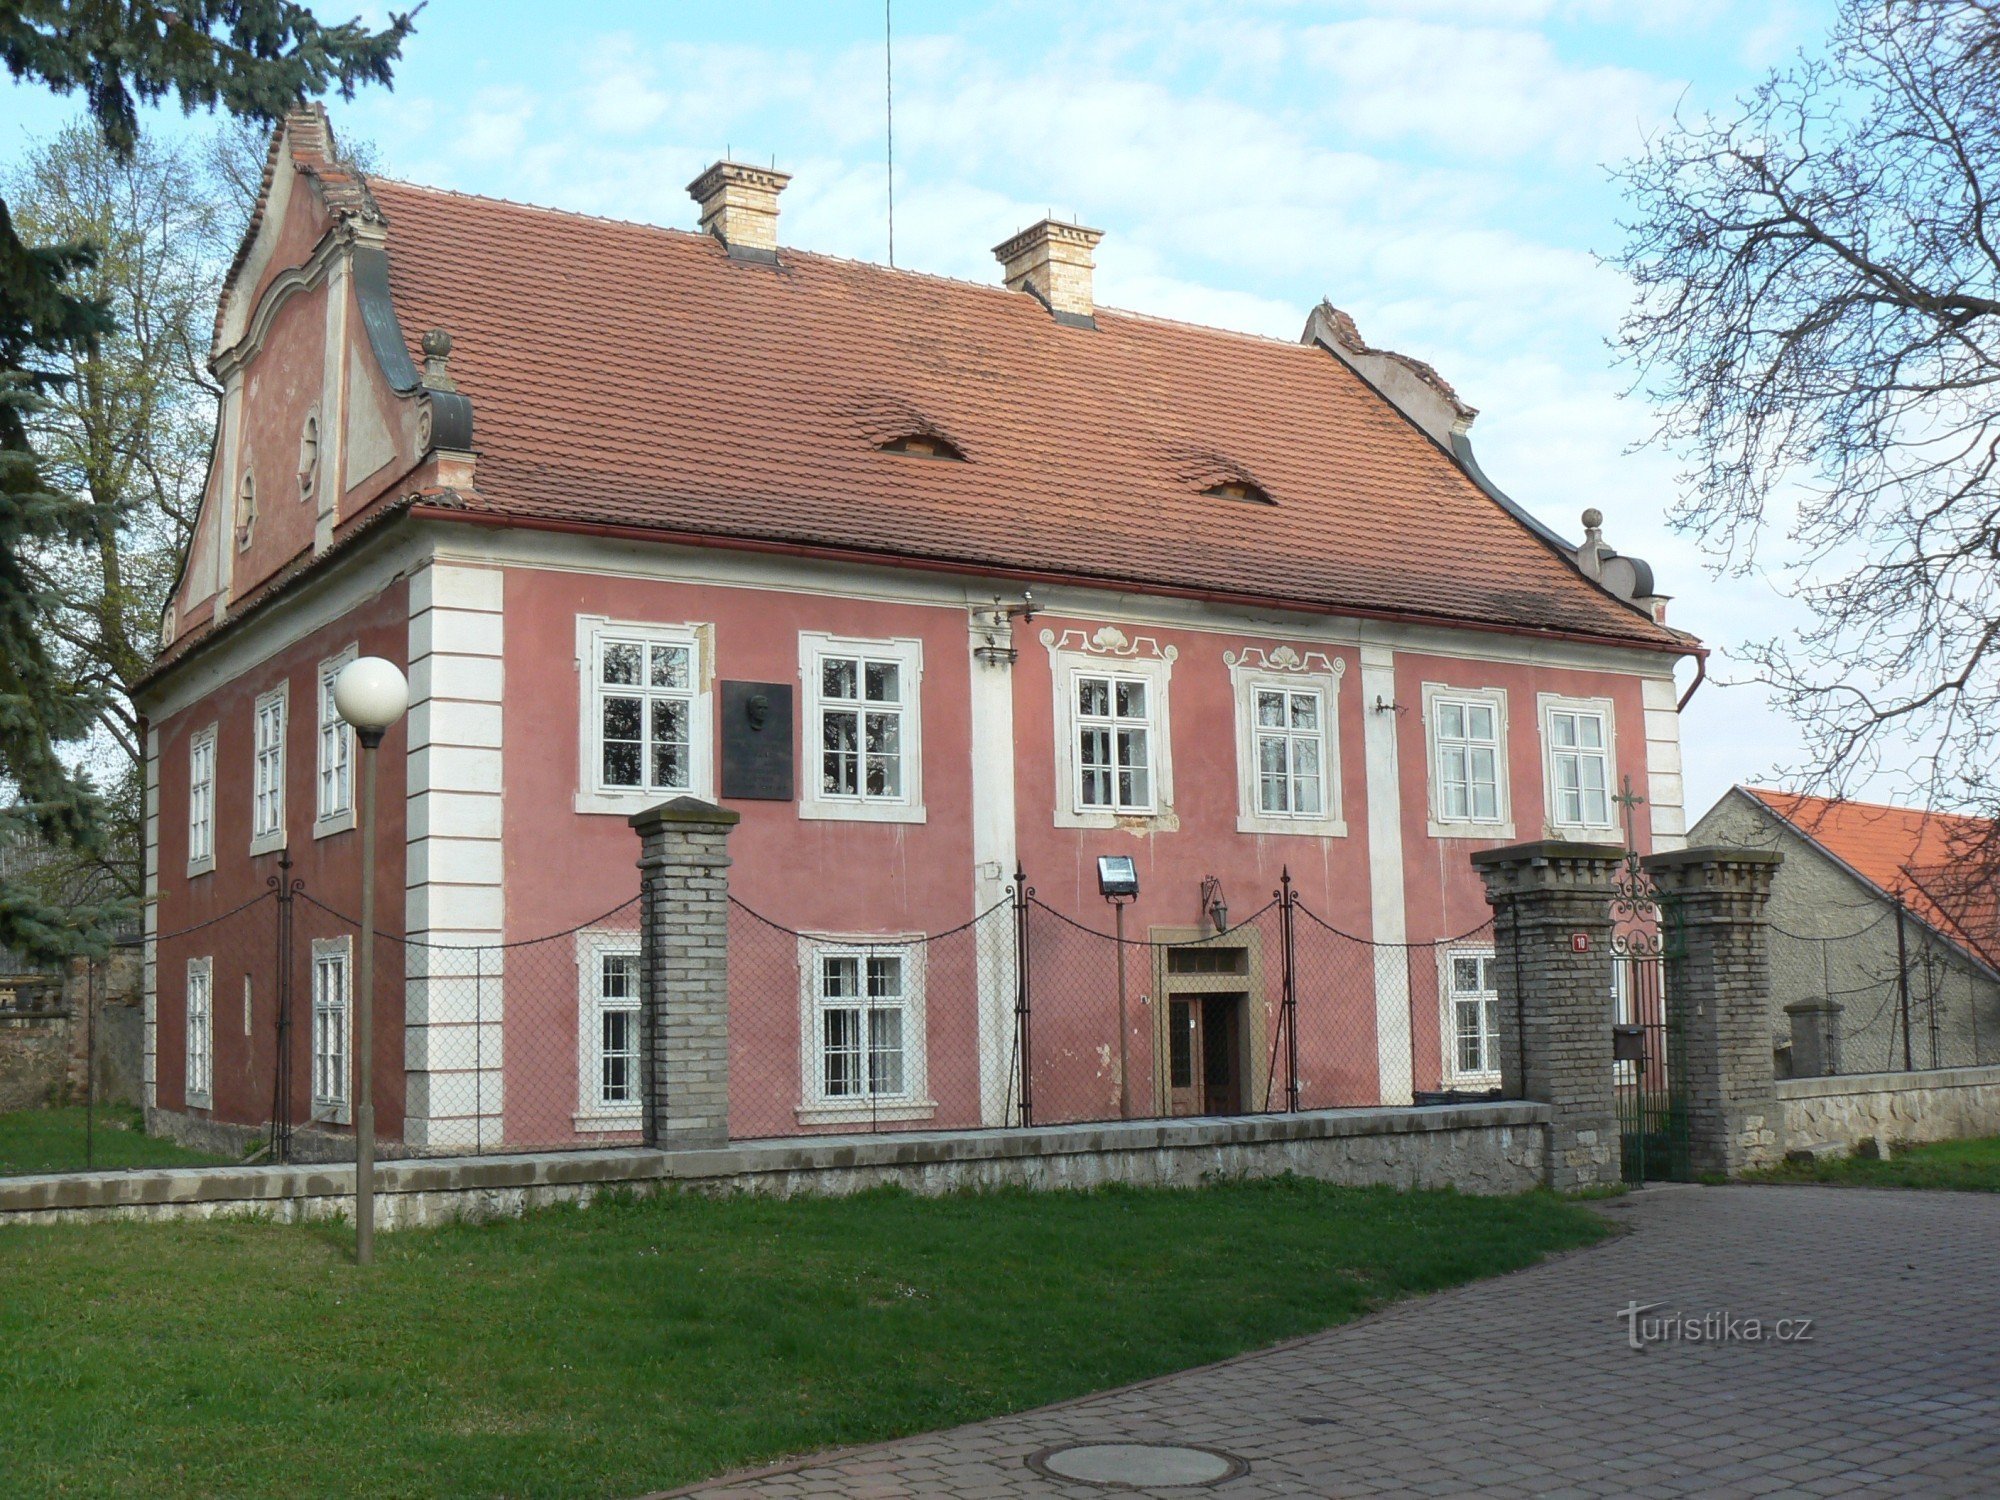 Orech, hus nr 10 bakom kyrkan, arbetsplats för J.Š. Baar